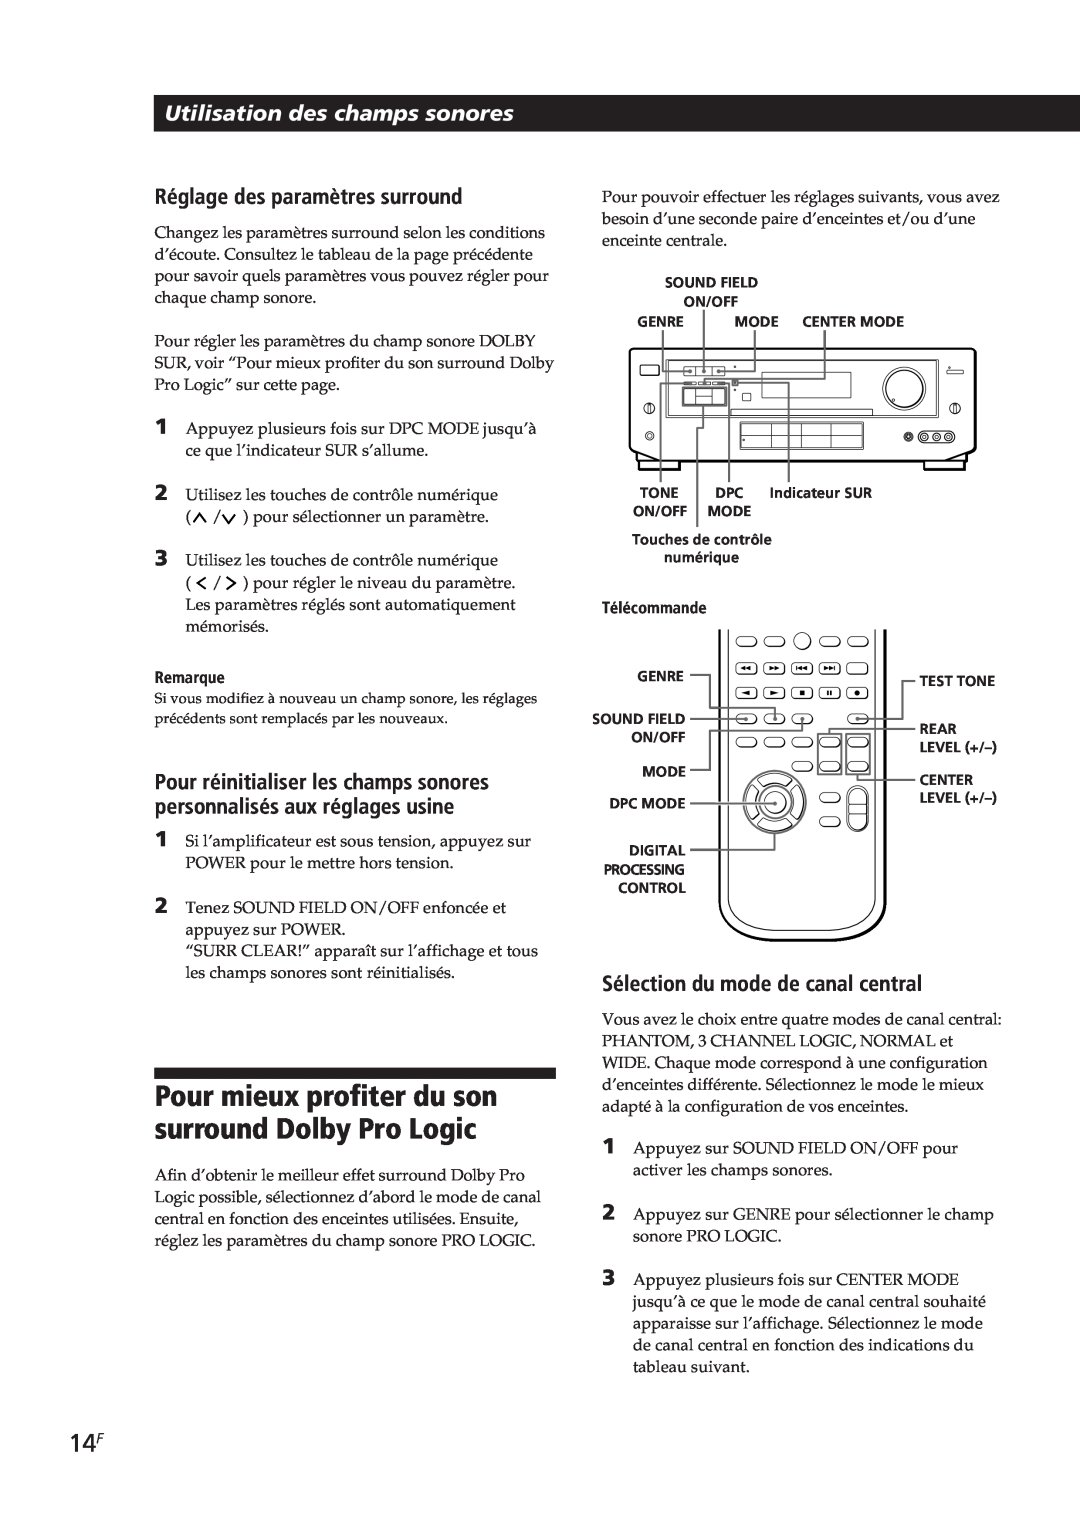 Sony TA-VE700 manual Utilisation des champs sonores, Réglage des paramètres surround, Sélection du mode de canal central 